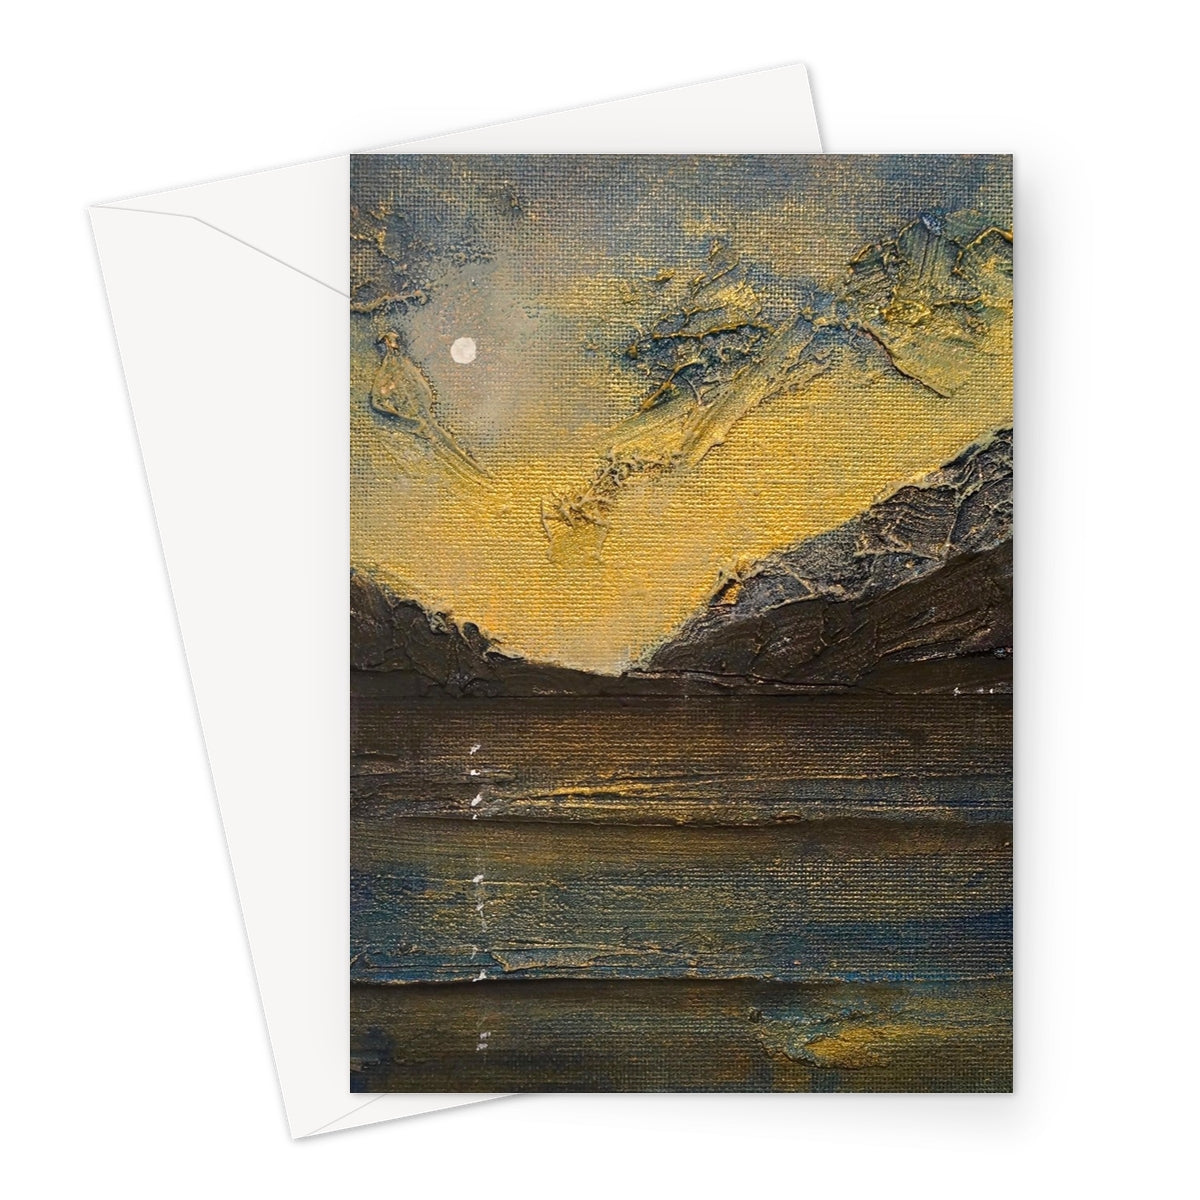 Loch Lomond Moonlight Art Gifts Greeting Card